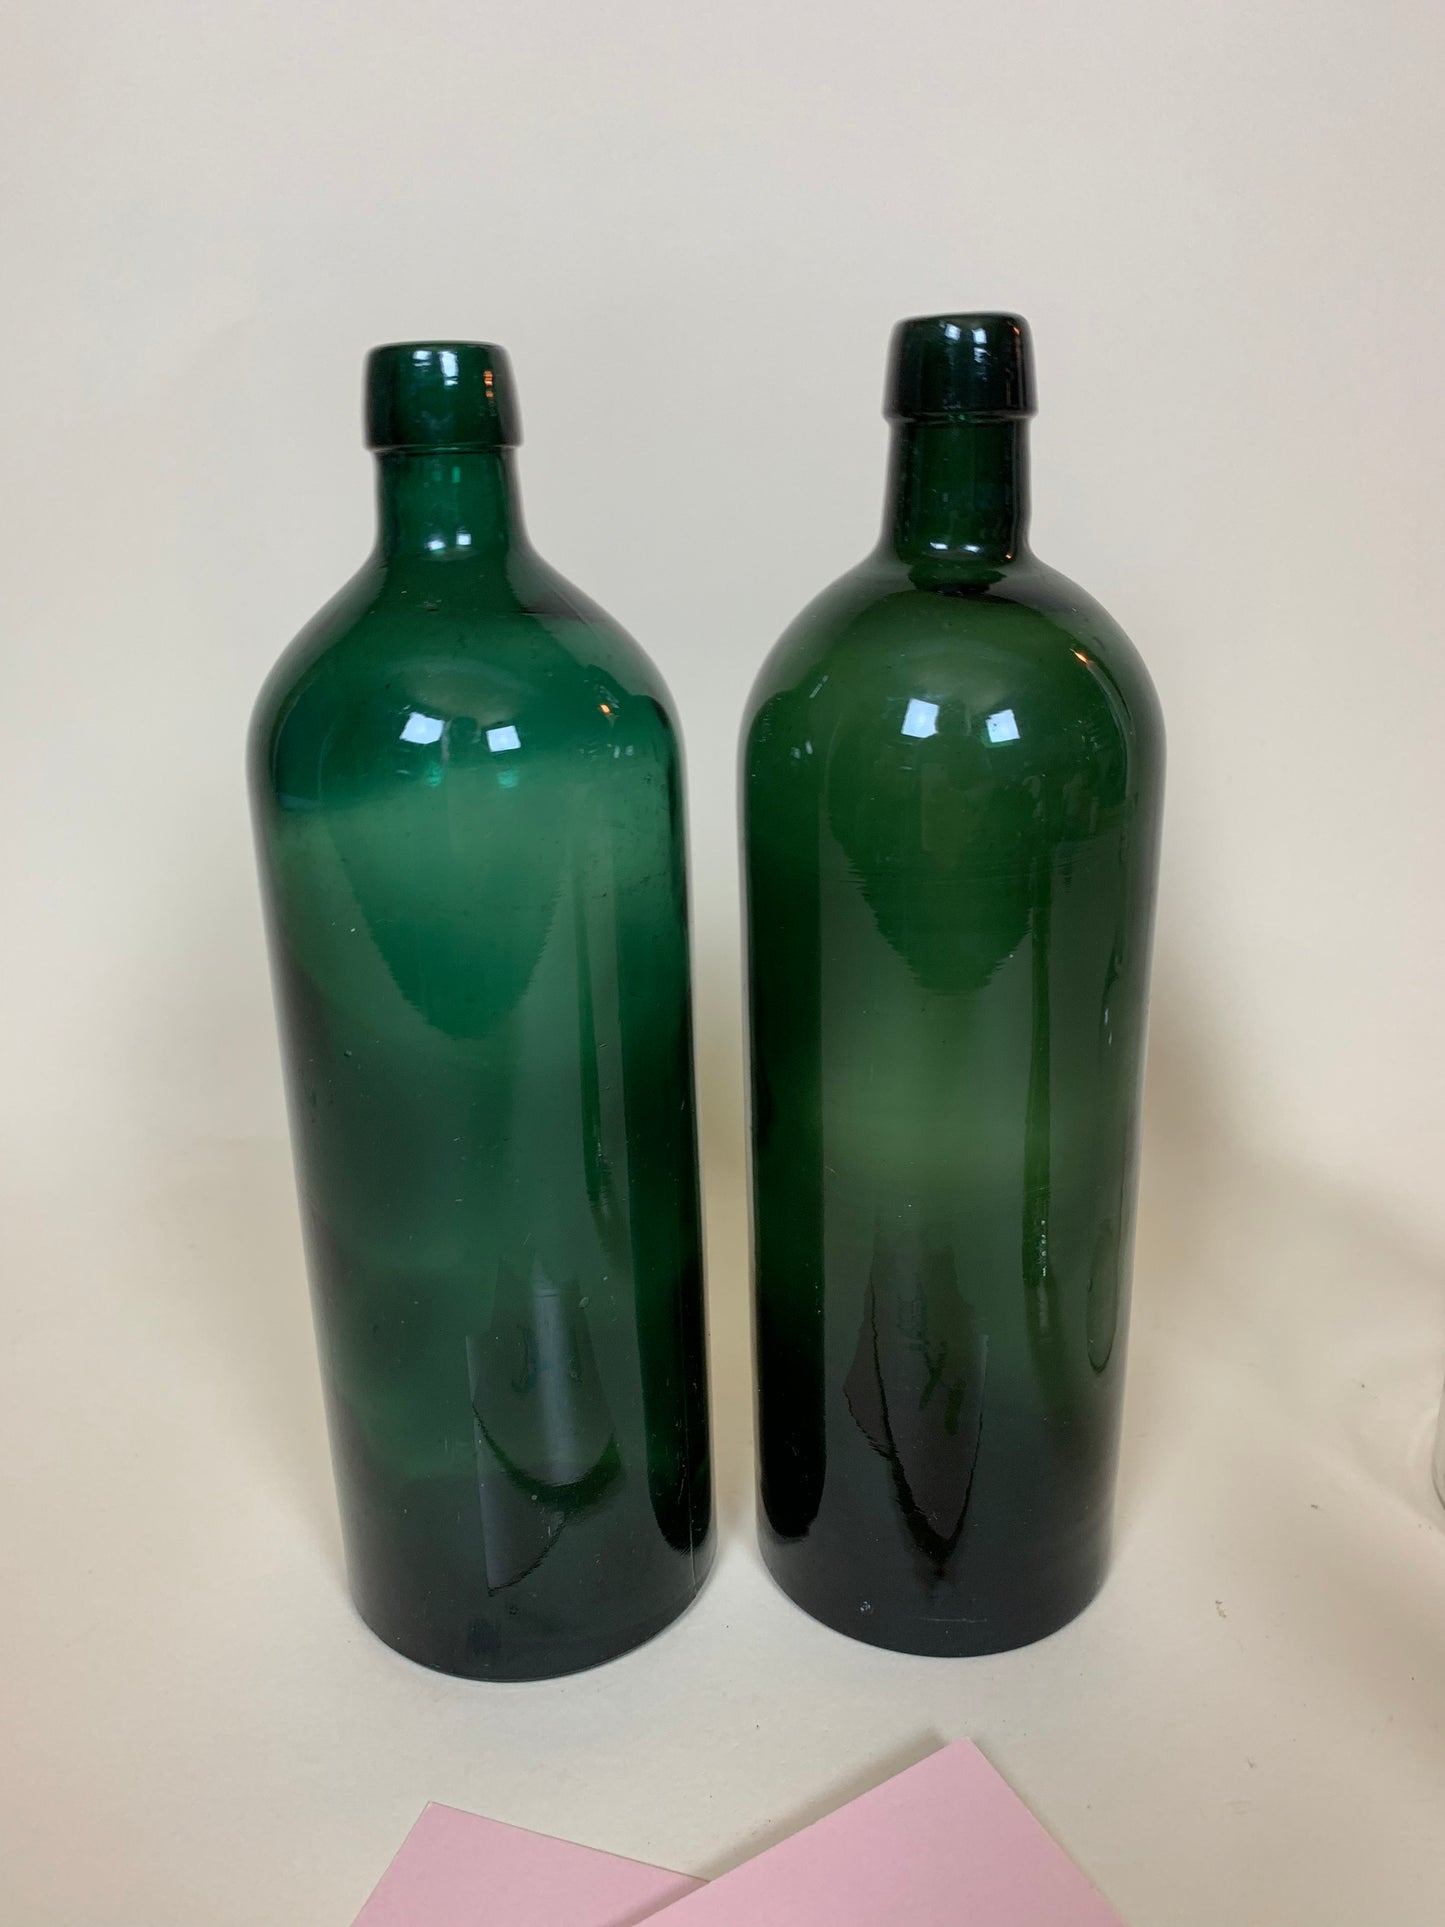 Dekorativ grøn flaske - Prisen er pr. stk.